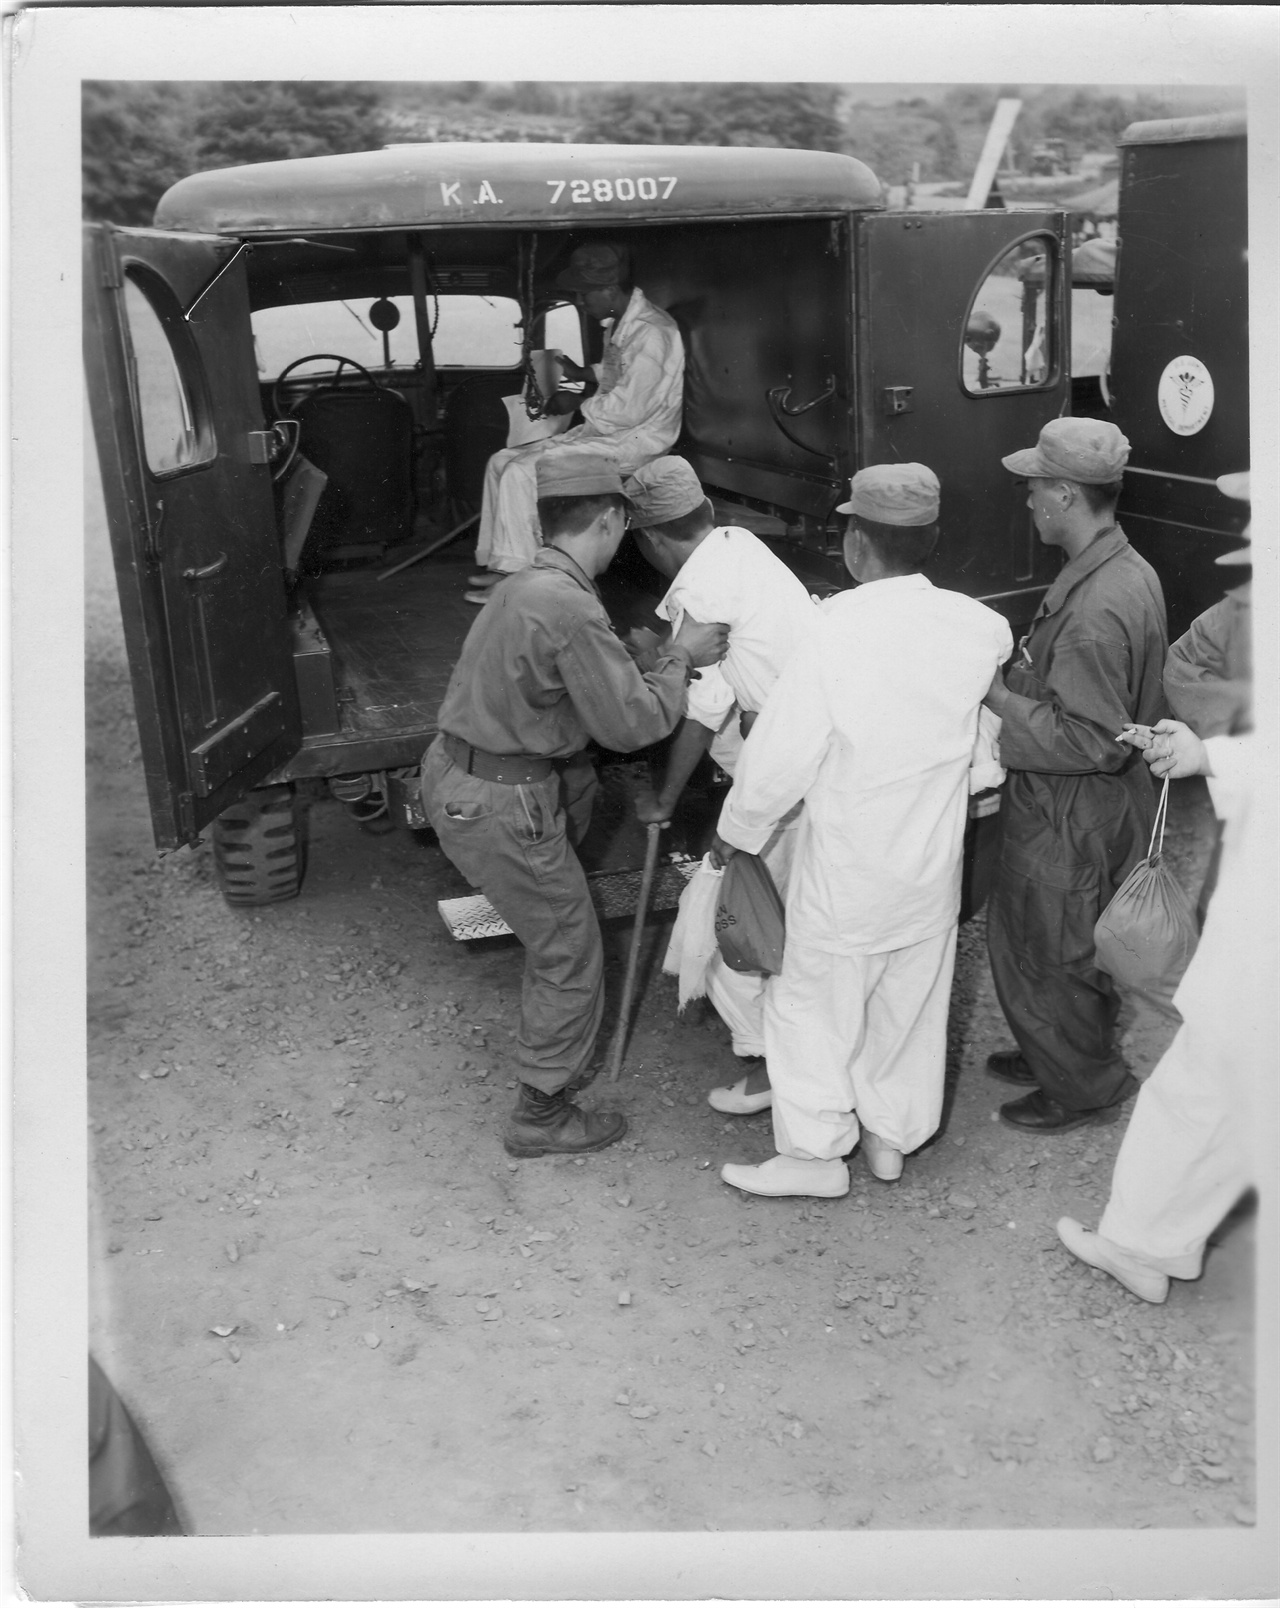 1953. 8. 16. 부상 한국군 포로가 귀환 즉시 앰뷸런스로 옮겨지고 있다.